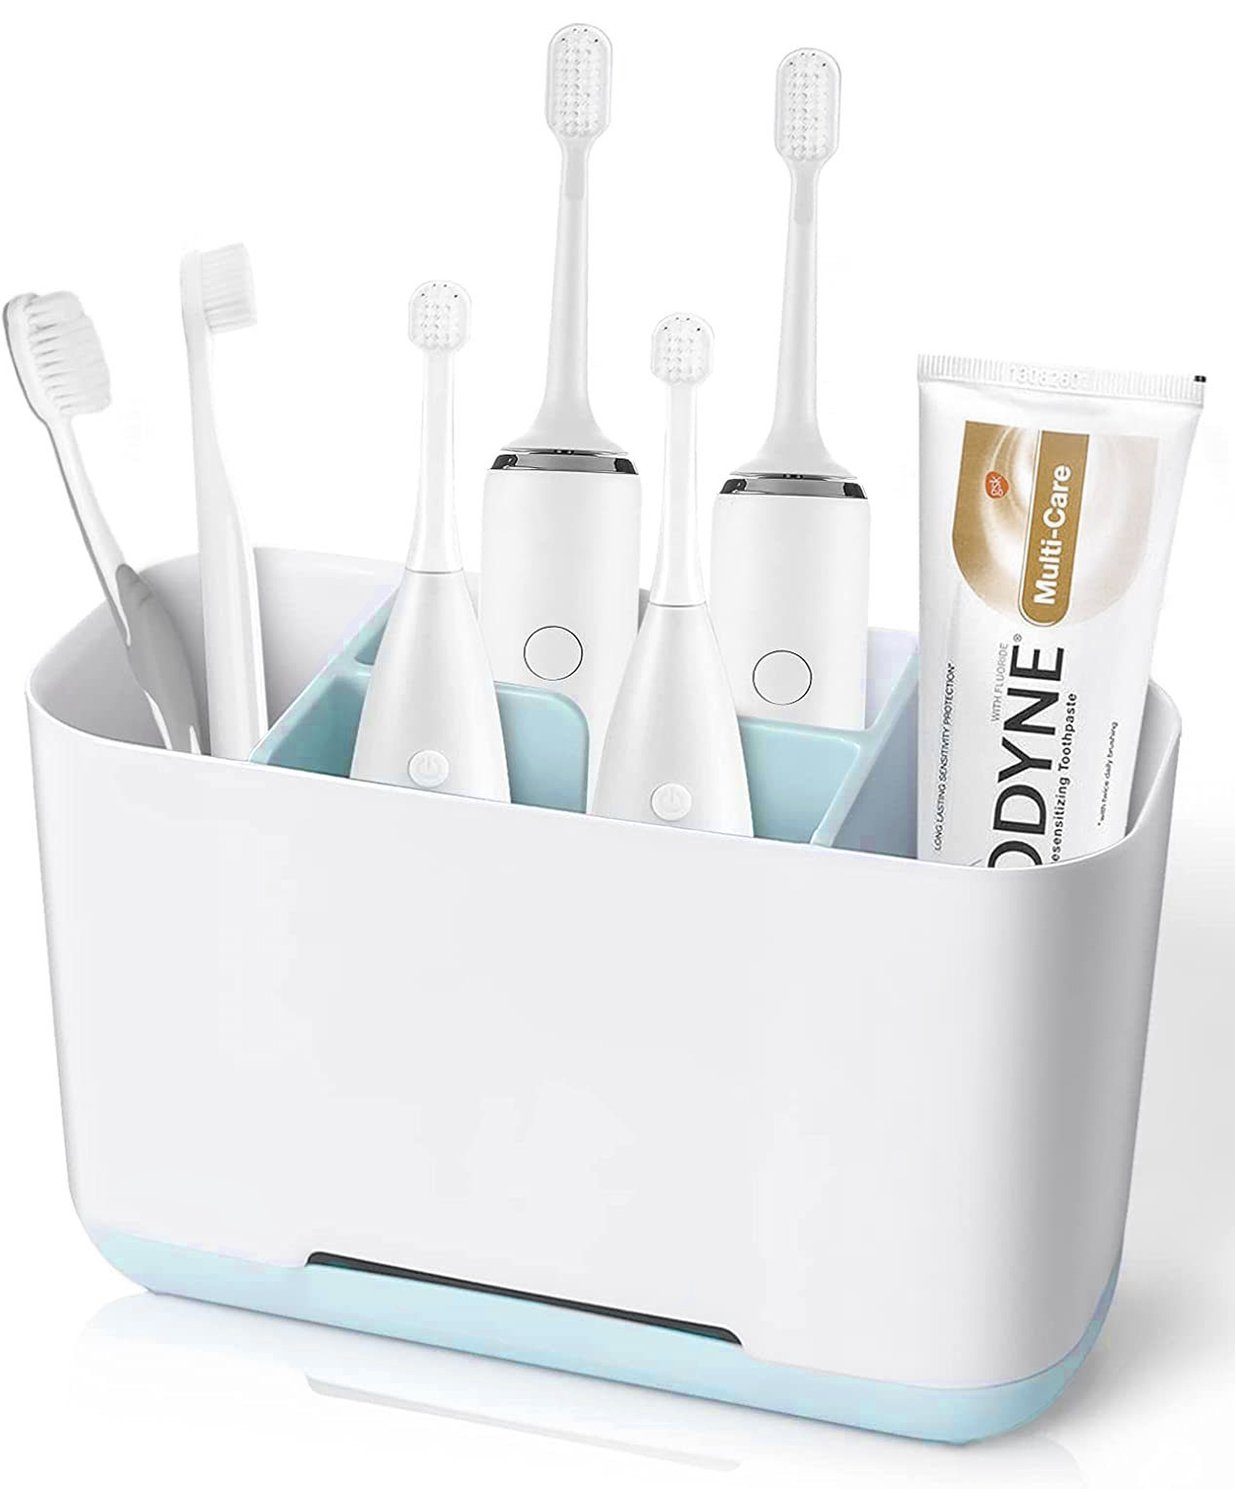 HYTIREBY Zahnbürstenhalter Zahnbürstenhalter Badezimmer Elektrischer Zahnbürstenständer, Einstellbarer Plastic Zahnbürsten Halter für Bad Waschbecken (Weiß)